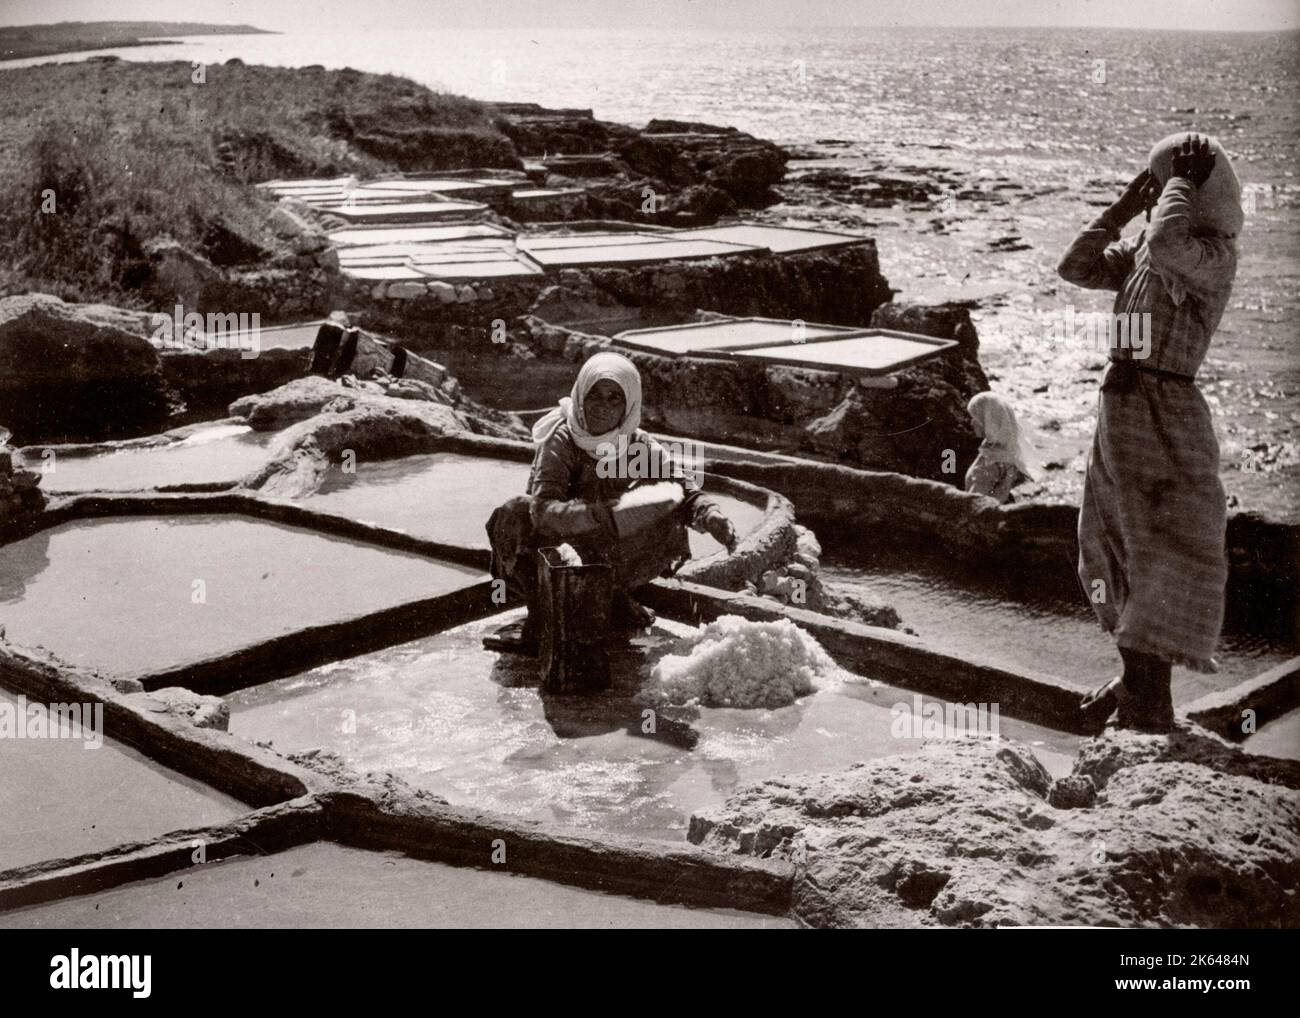 1943 - Syrie - faire du sel à partir de l'eau de mer par évaporation sur la côte à Tartus Photographie par un officier de recrutement de l'armée britannique stationnés en Afrique de l'est et au Moyen-Orient pendant la Seconde Guerre mondiale Banque D'Images